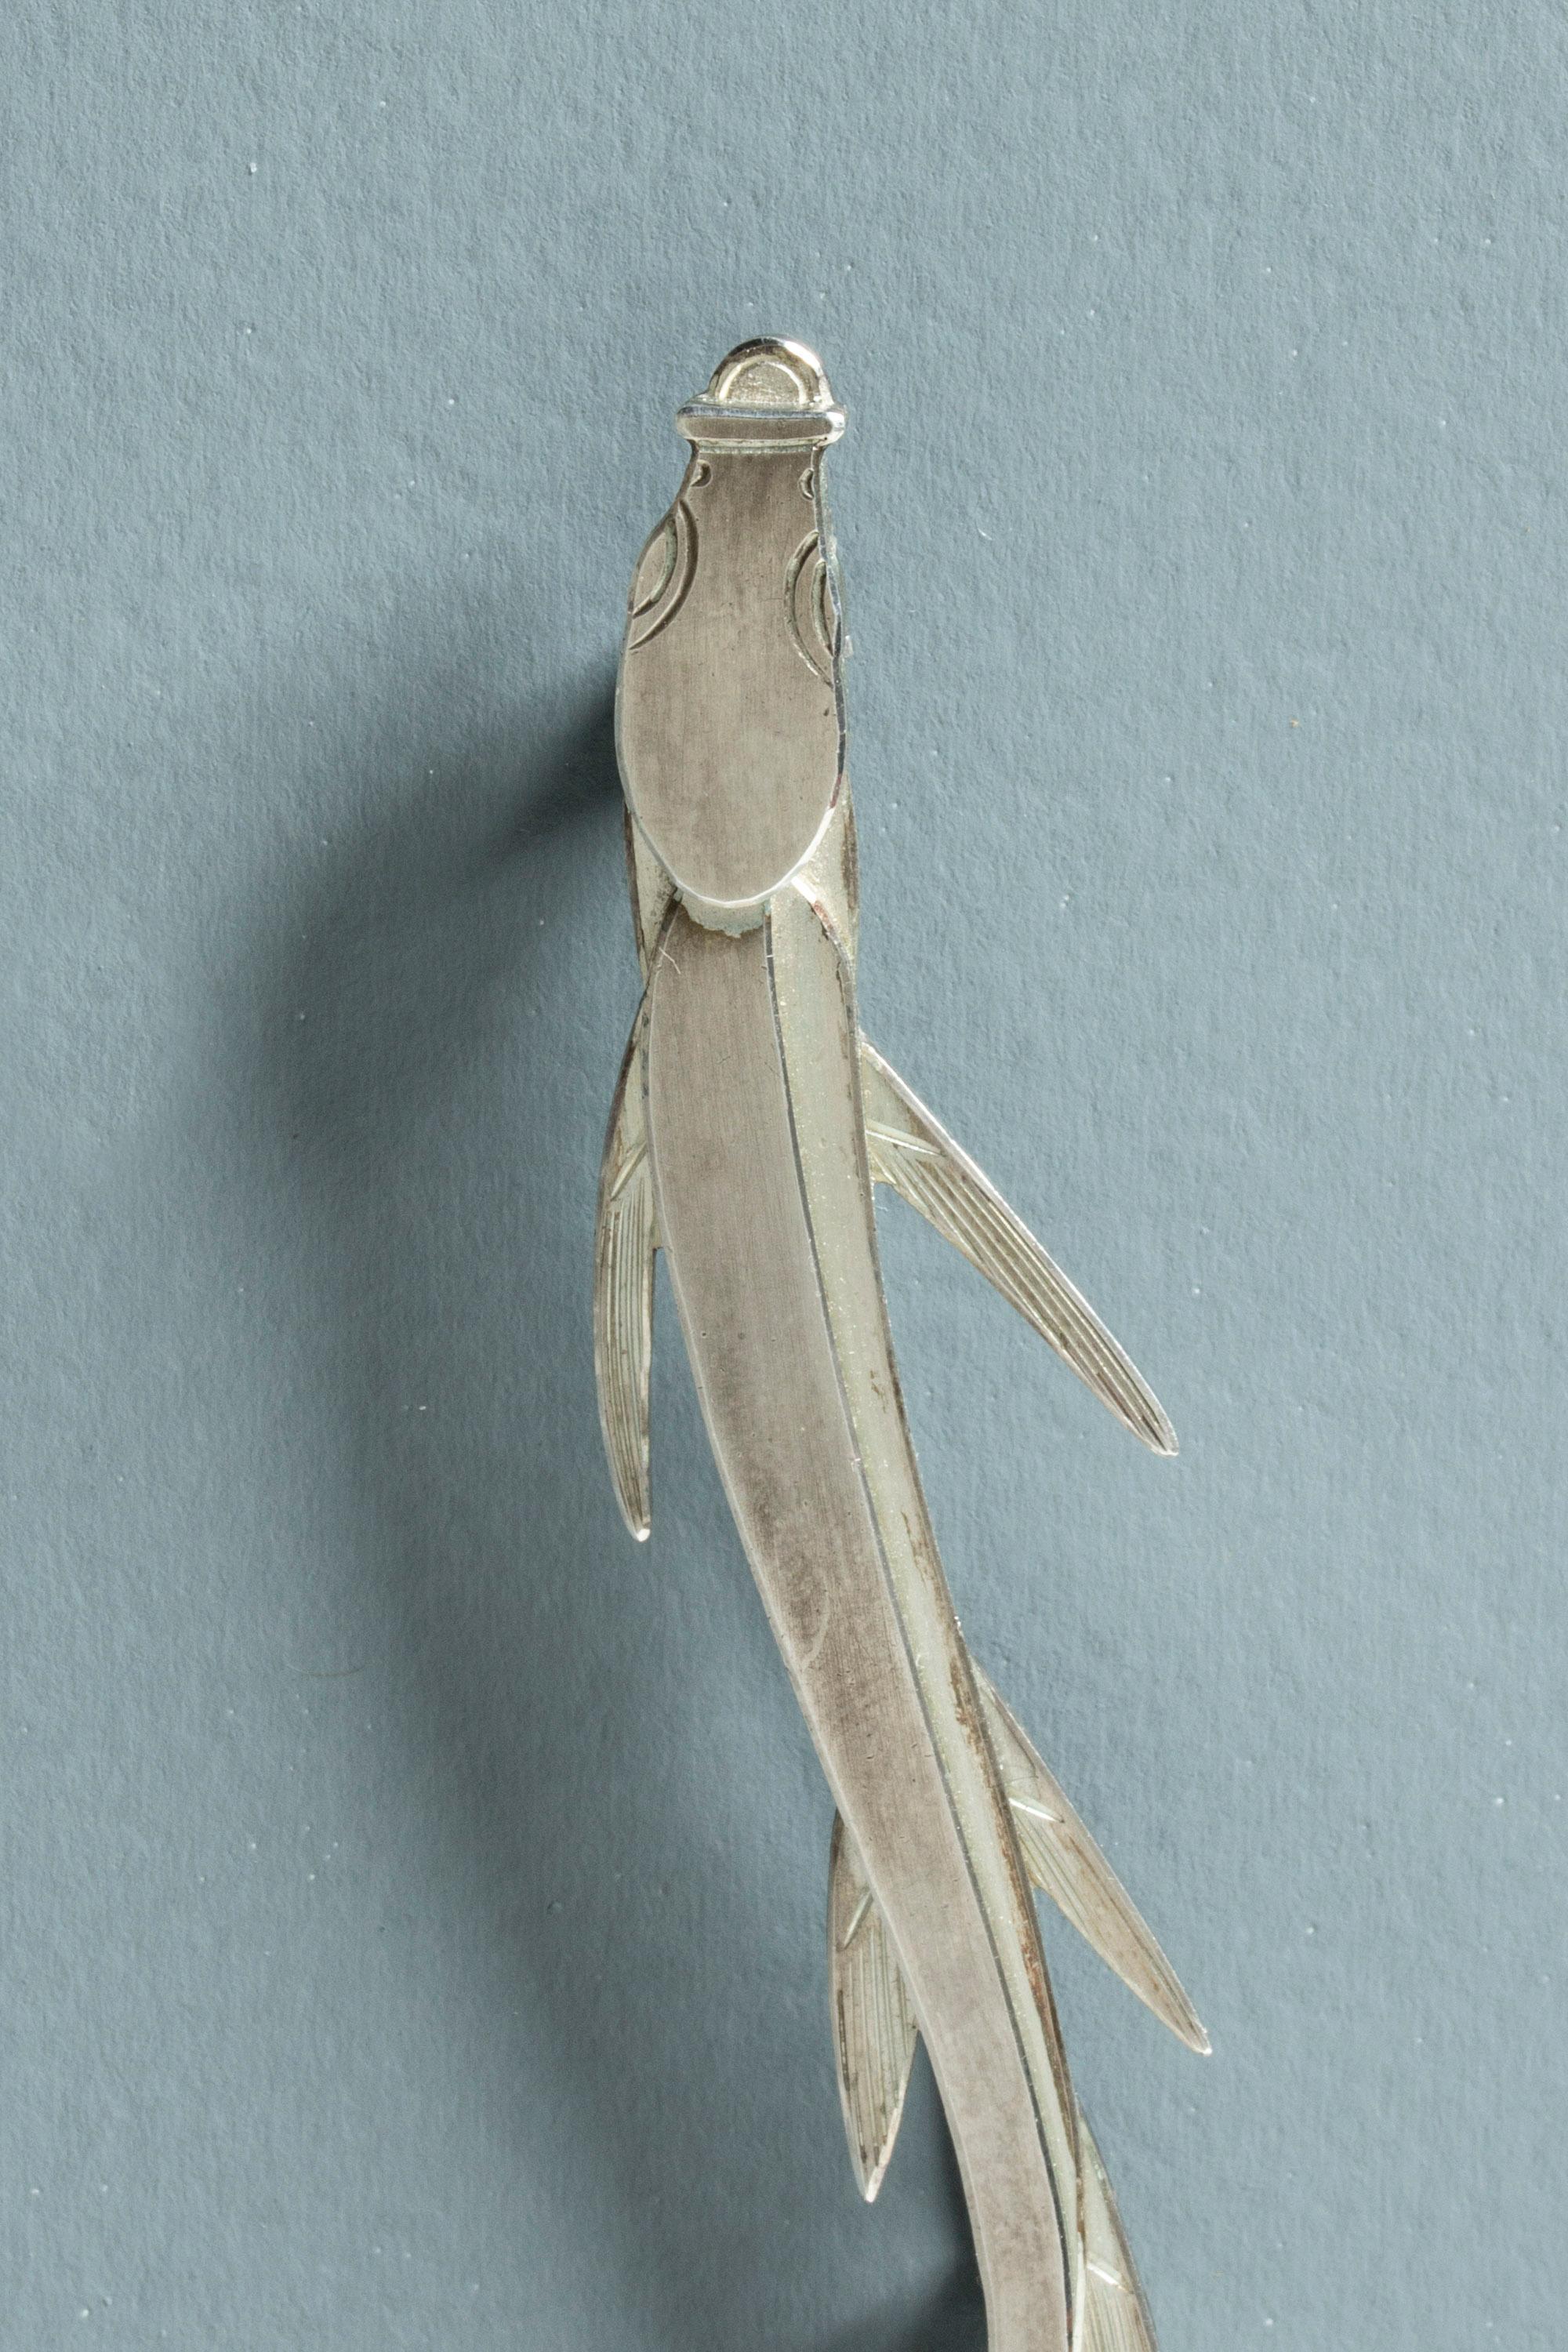 Silver Fish Brooch by Wiwen Nilsson, Sweden, 1965 3